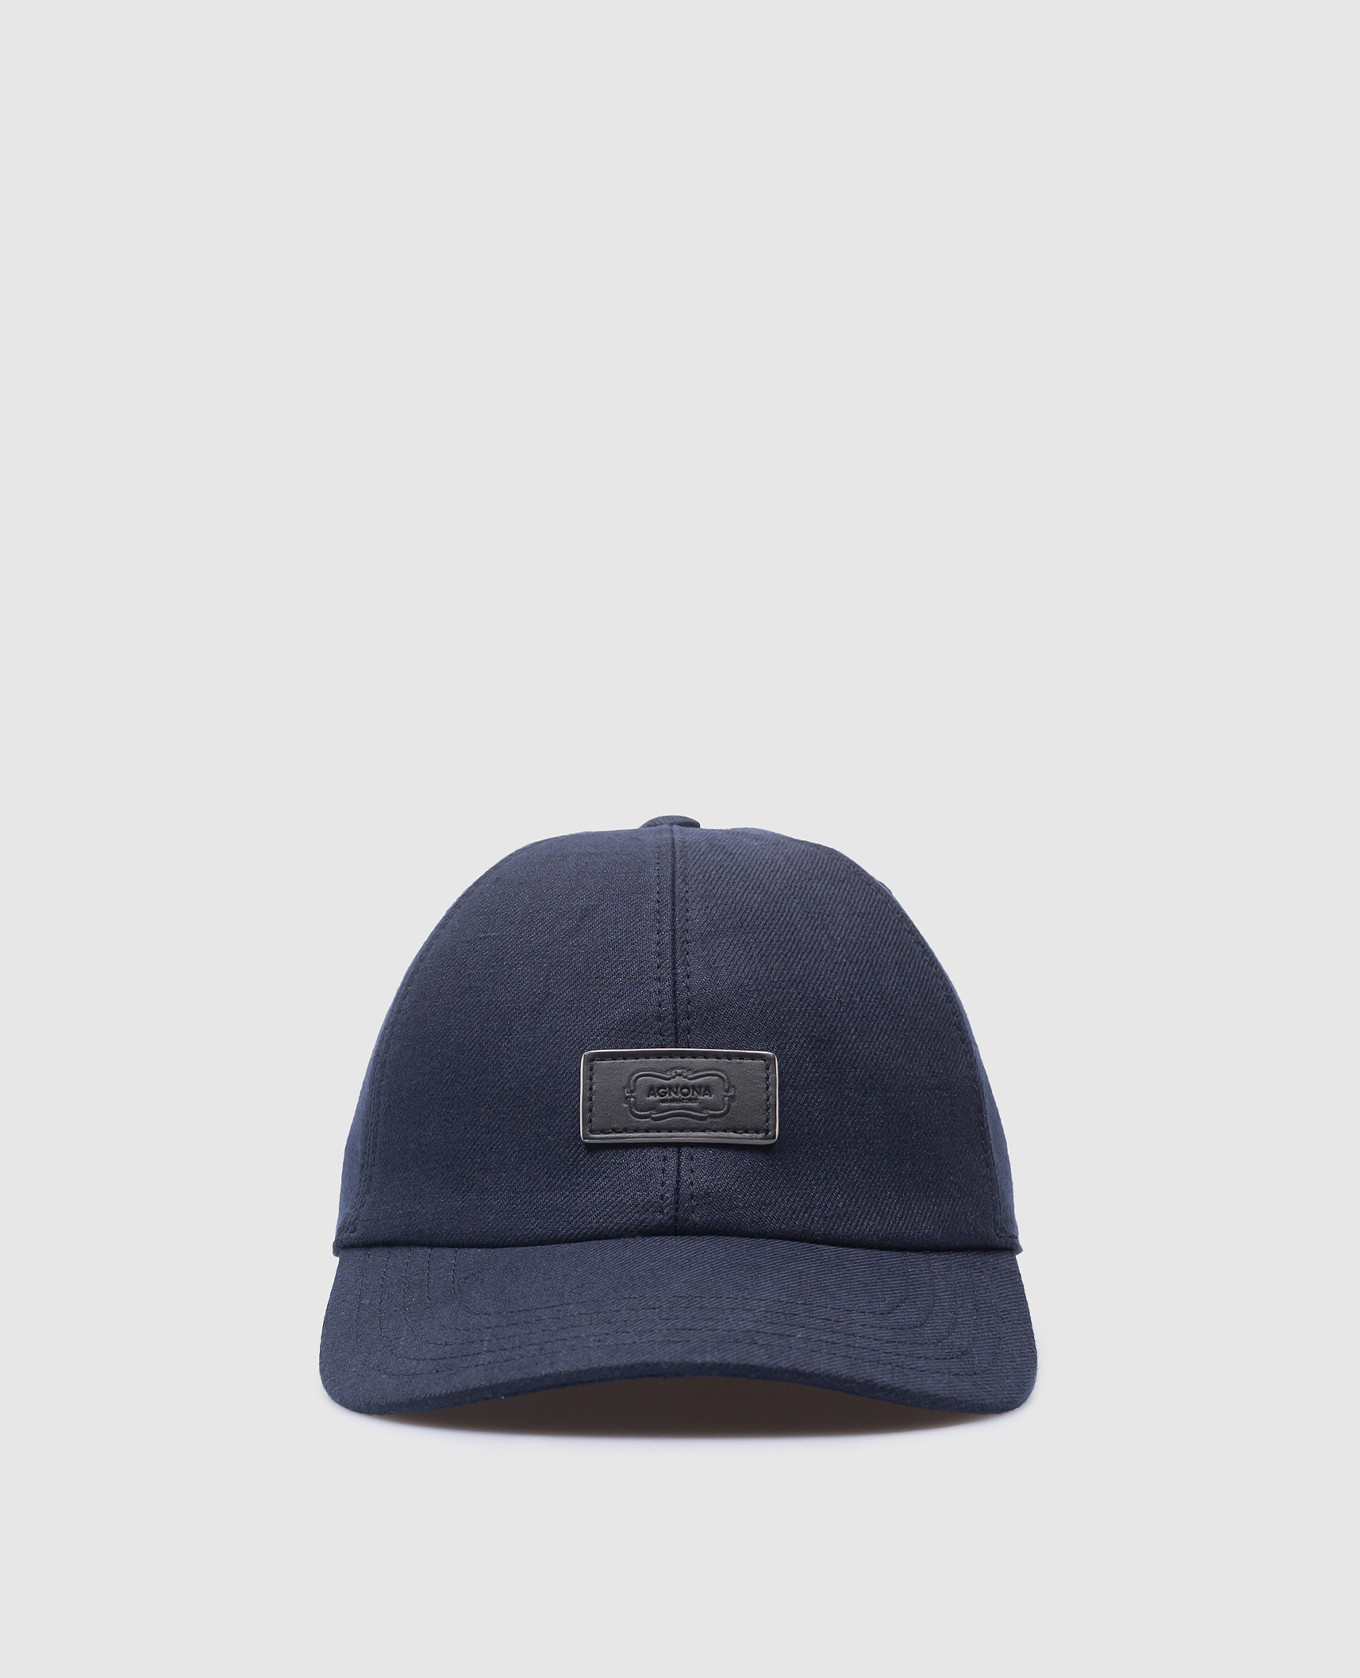 Blue linen cap with logo patch